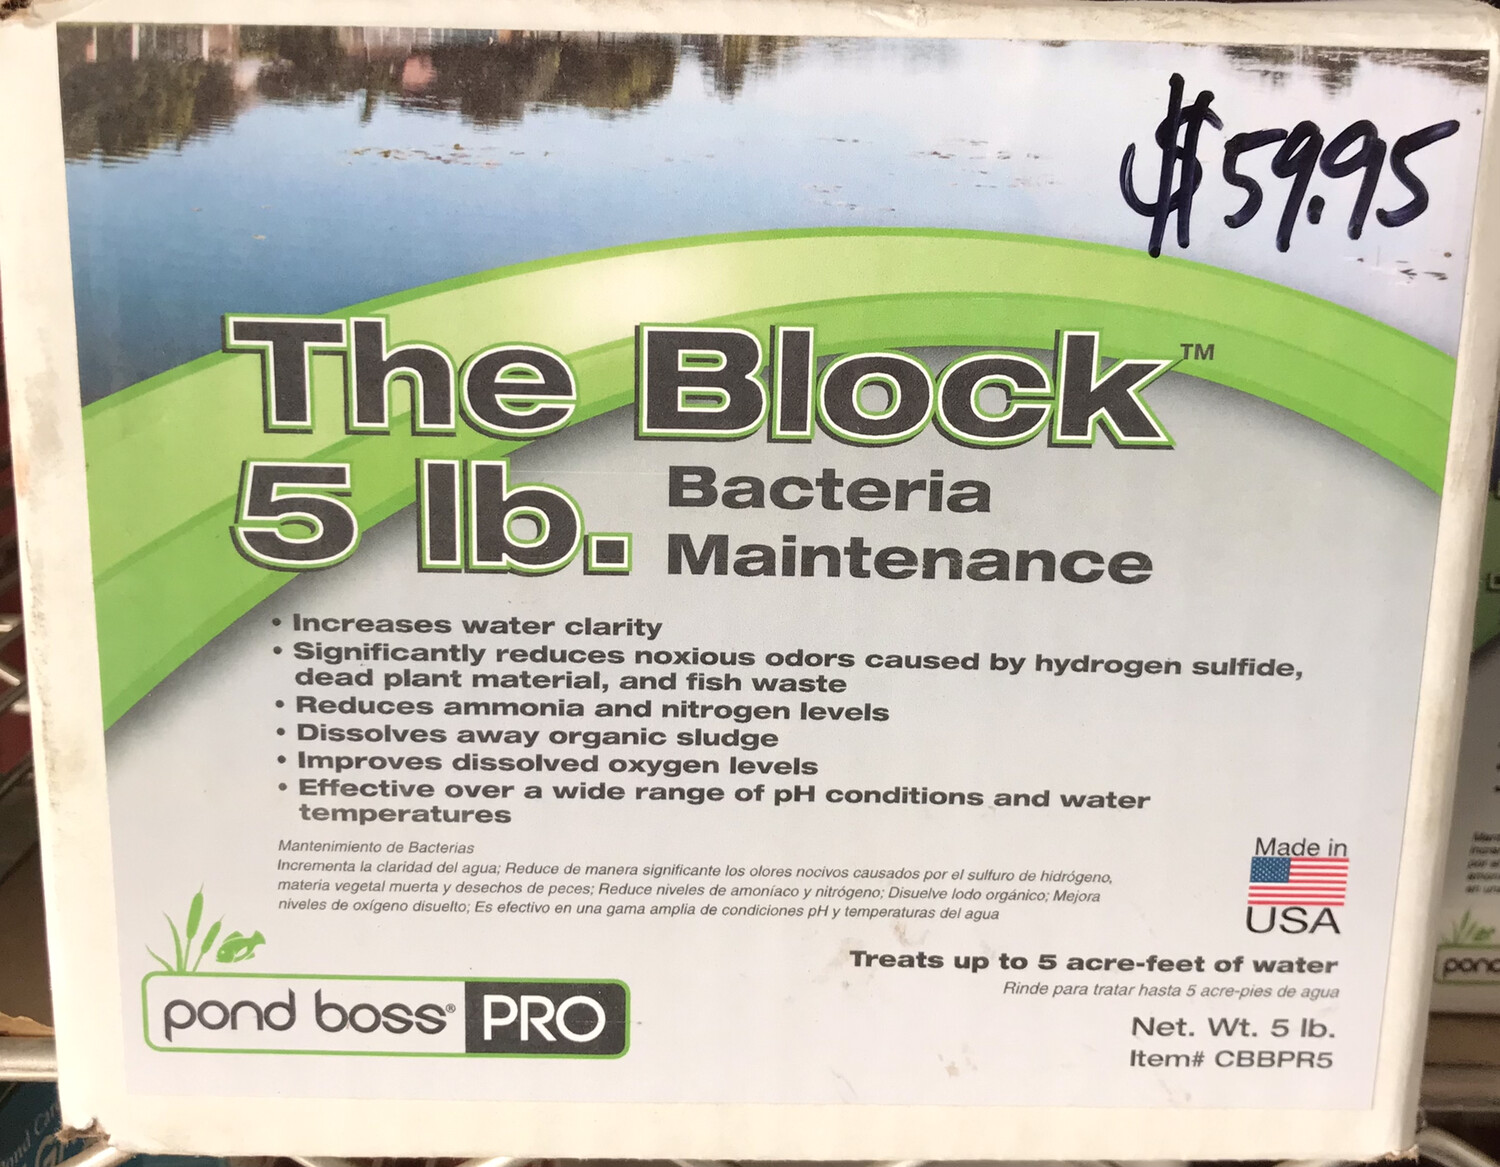 The Block 5 lb